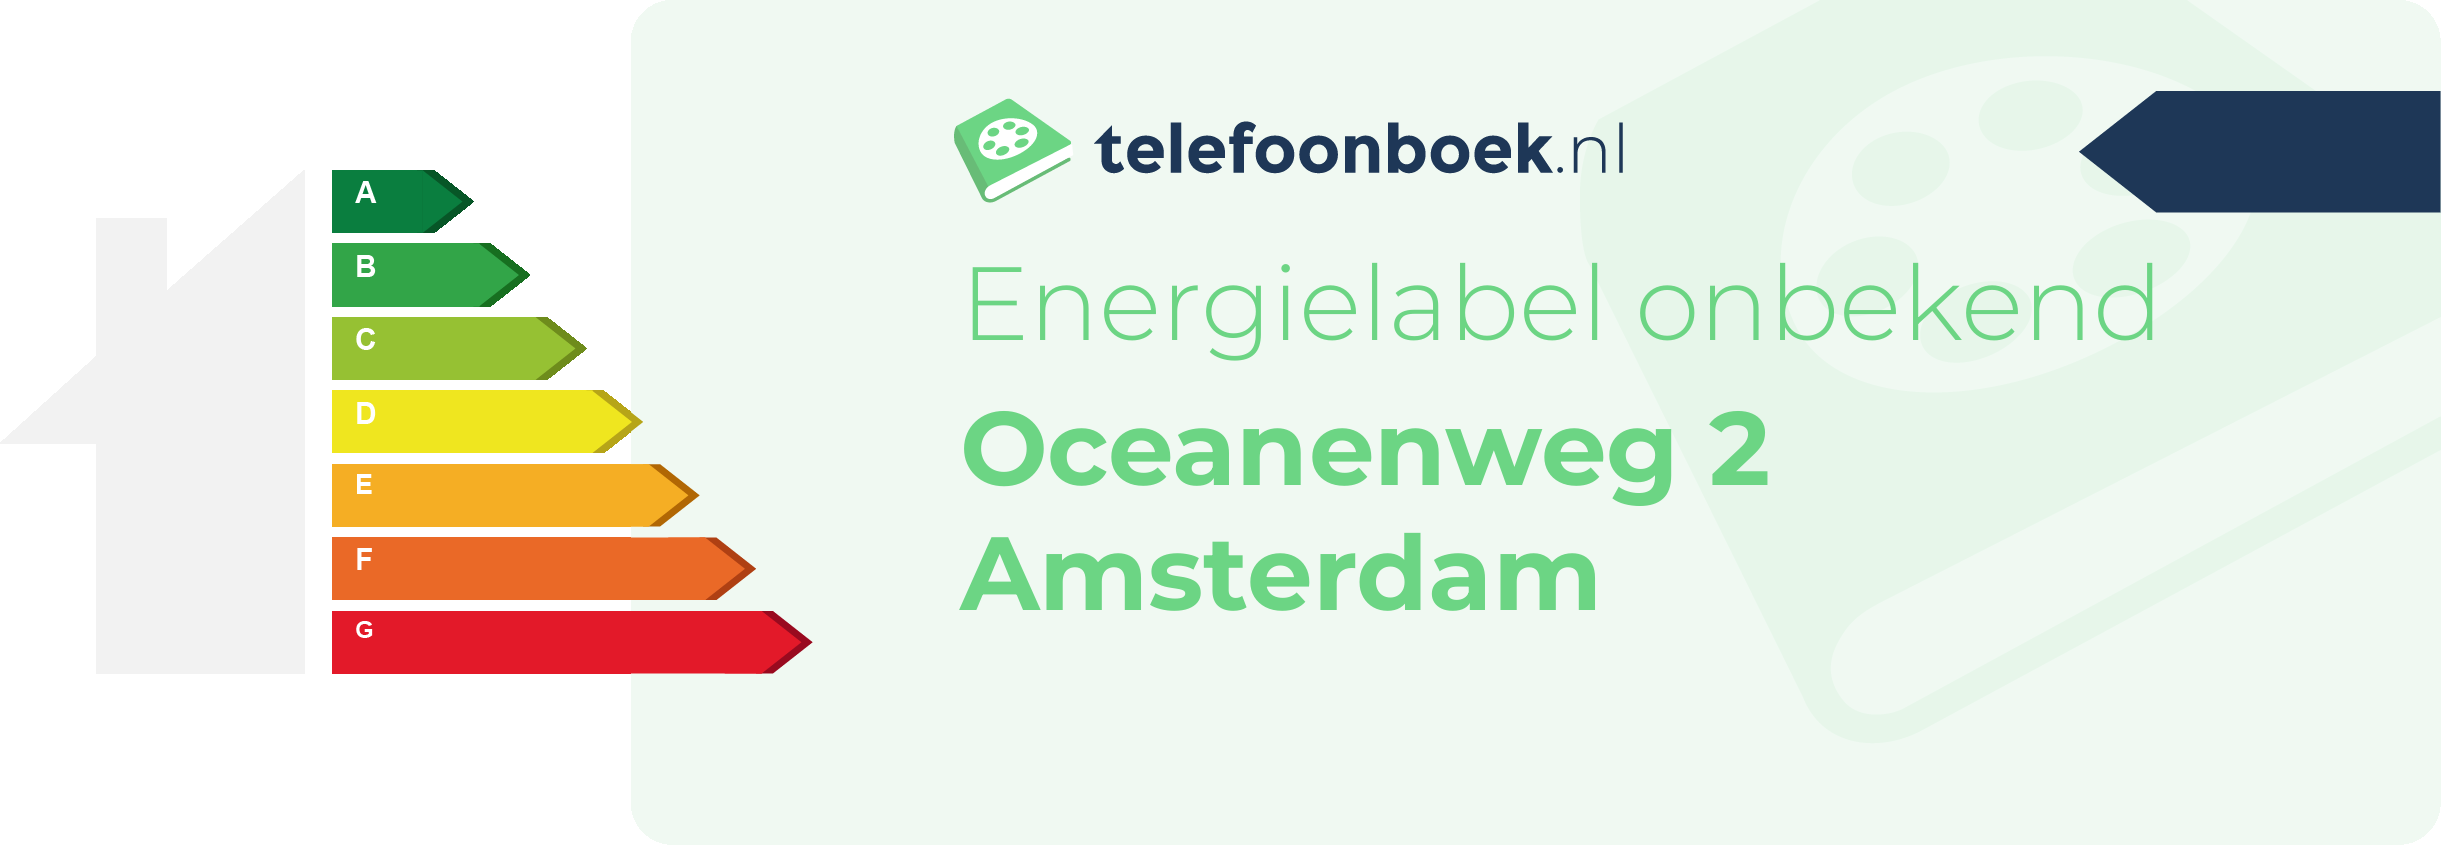 Energielabel Oceanenweg 2 Amsterdam